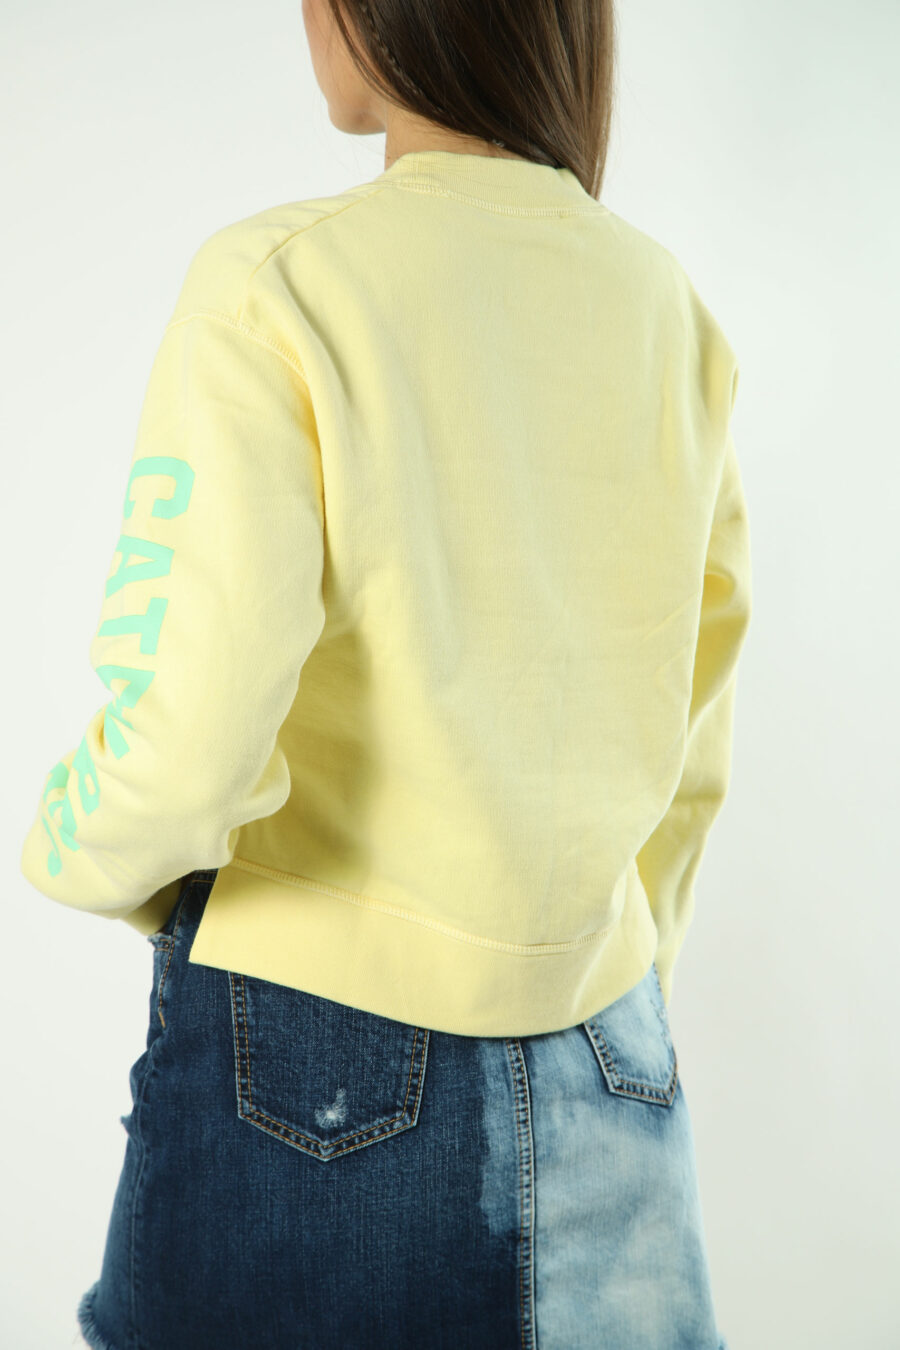 Gelbes Sweatshirt mit grünem Maxilogo und Text auf den Ärmeln - 8052134554463 2